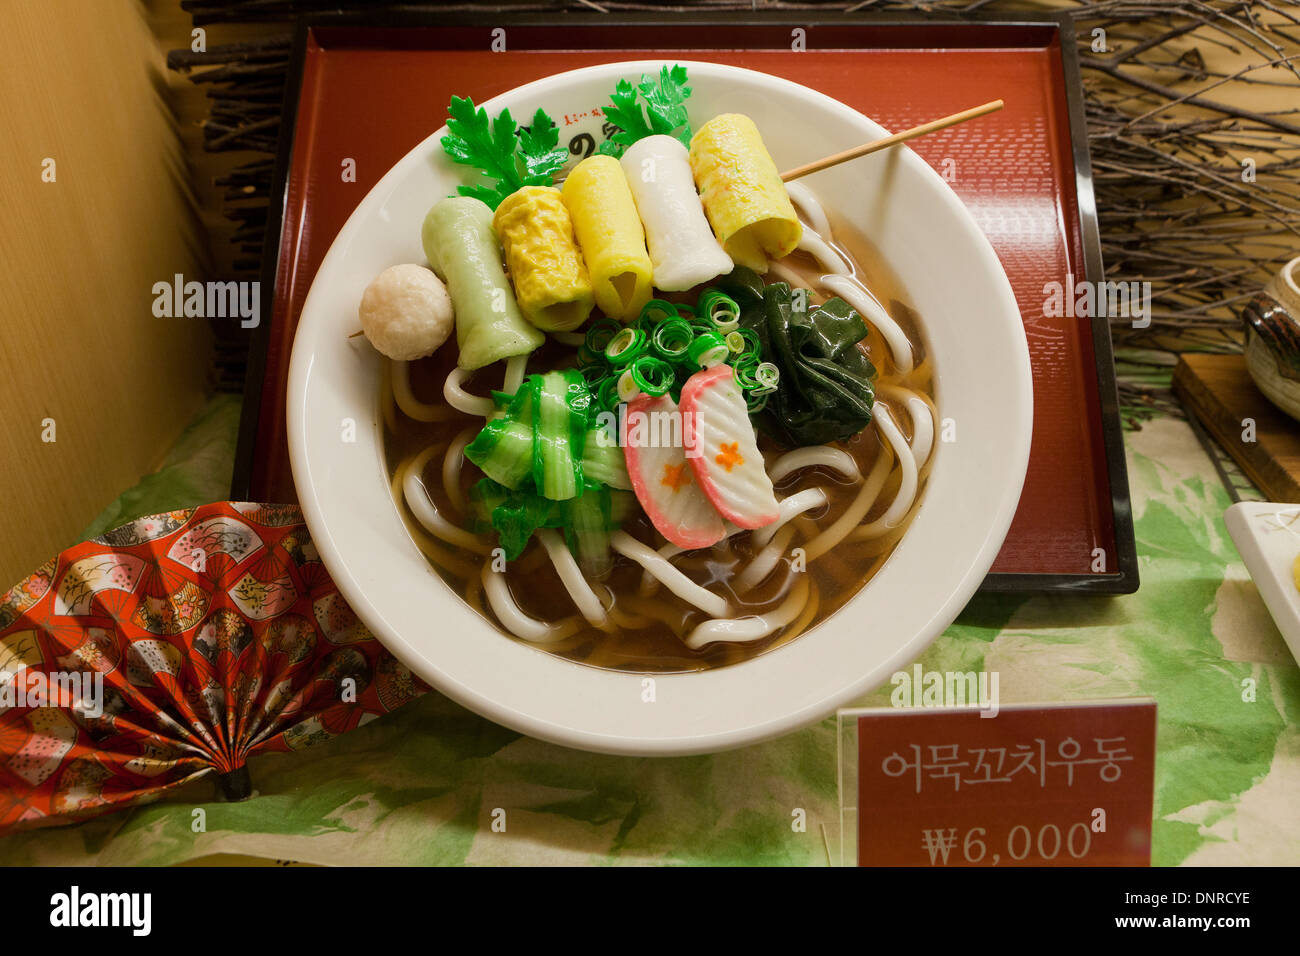 In Plastica Modello alimentare (udon noodles) visualizzare il caso in un ristorante fast food - Seoul, Corea del Sud Foto Stock